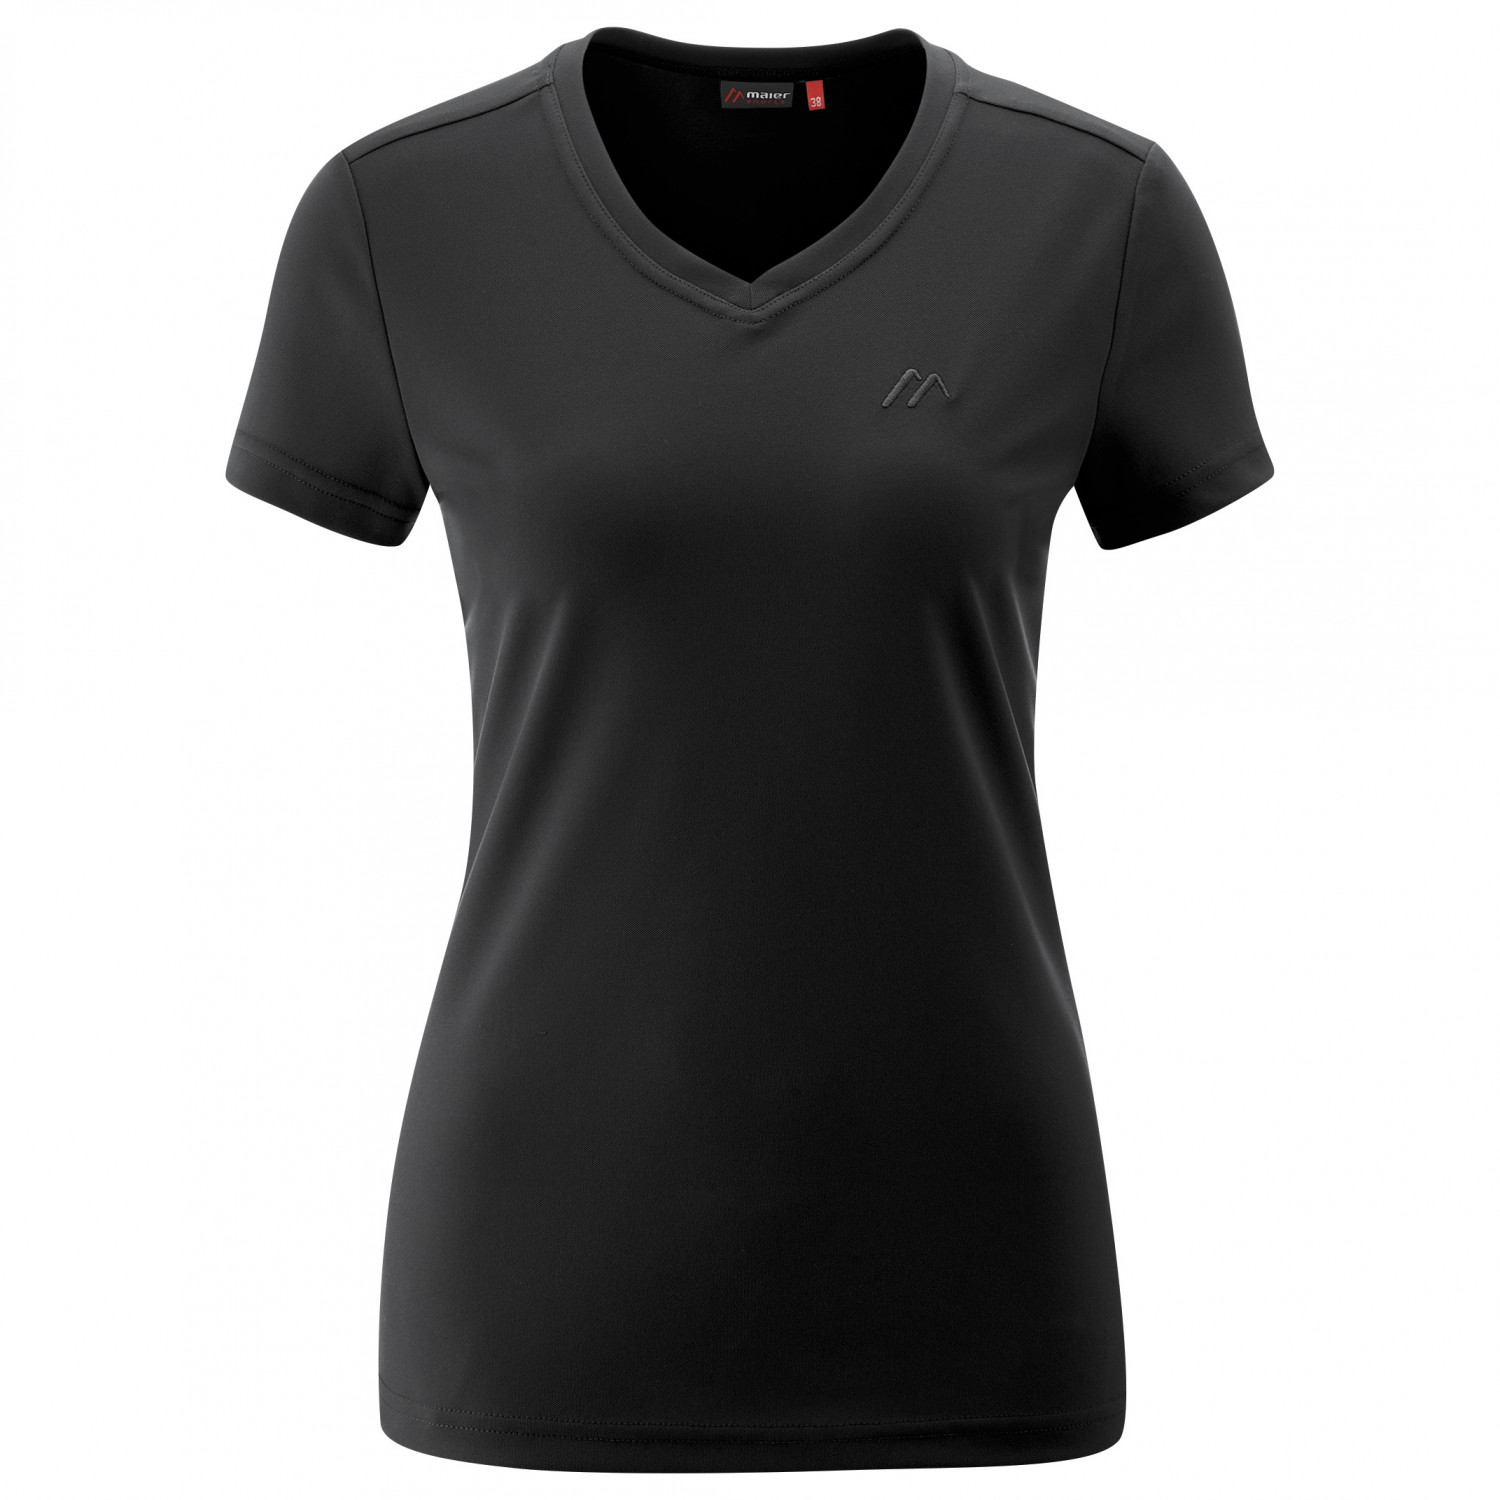 Функциональная рубашка Maier Sports Women's Trudy, черный